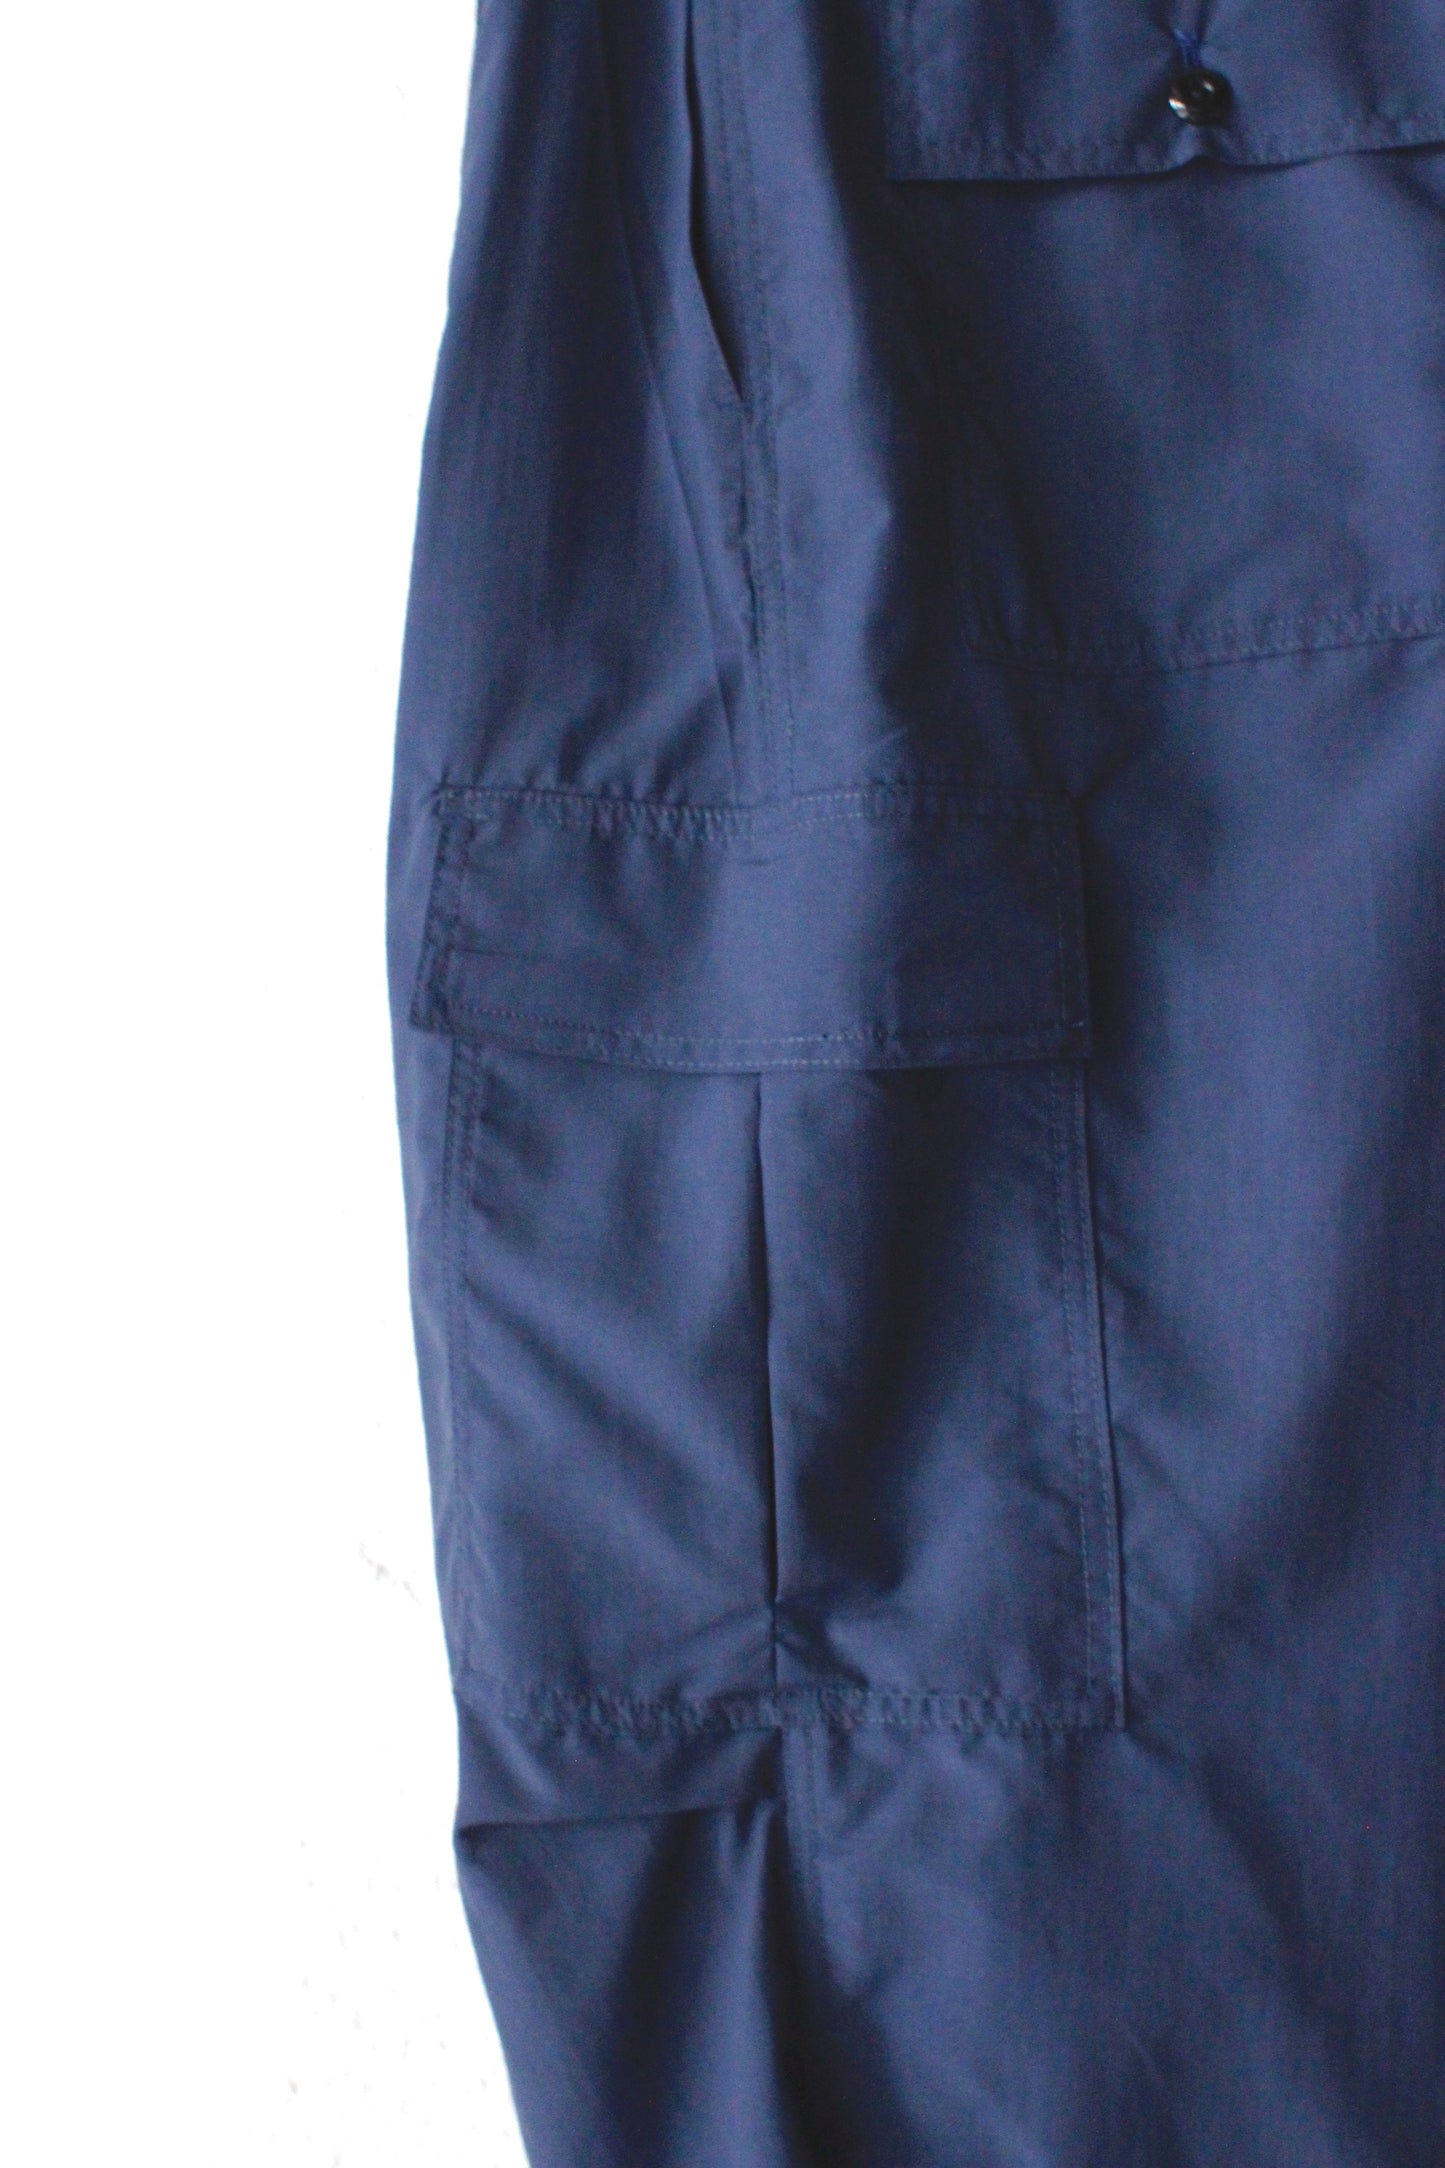 Berkeley Cargo Pants(Coming Soon NEW Color!!!)